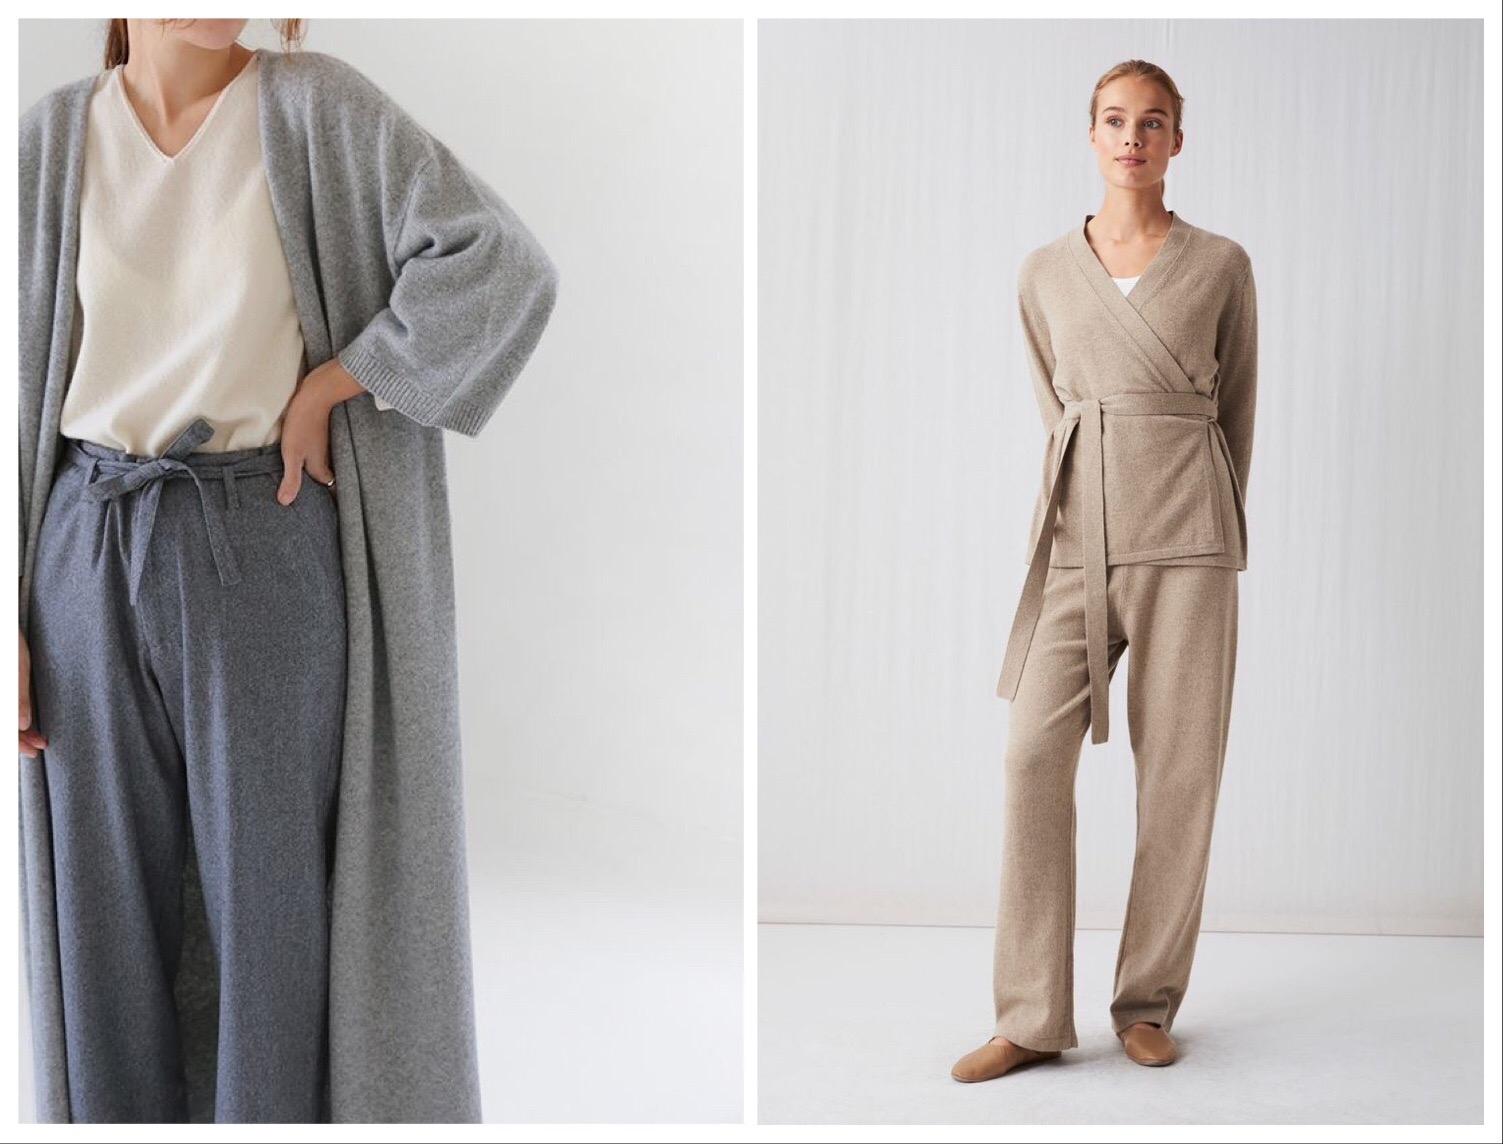 "Не пижамами едиными": подборка стильной одежды для дома (ФОТО) - фото №3